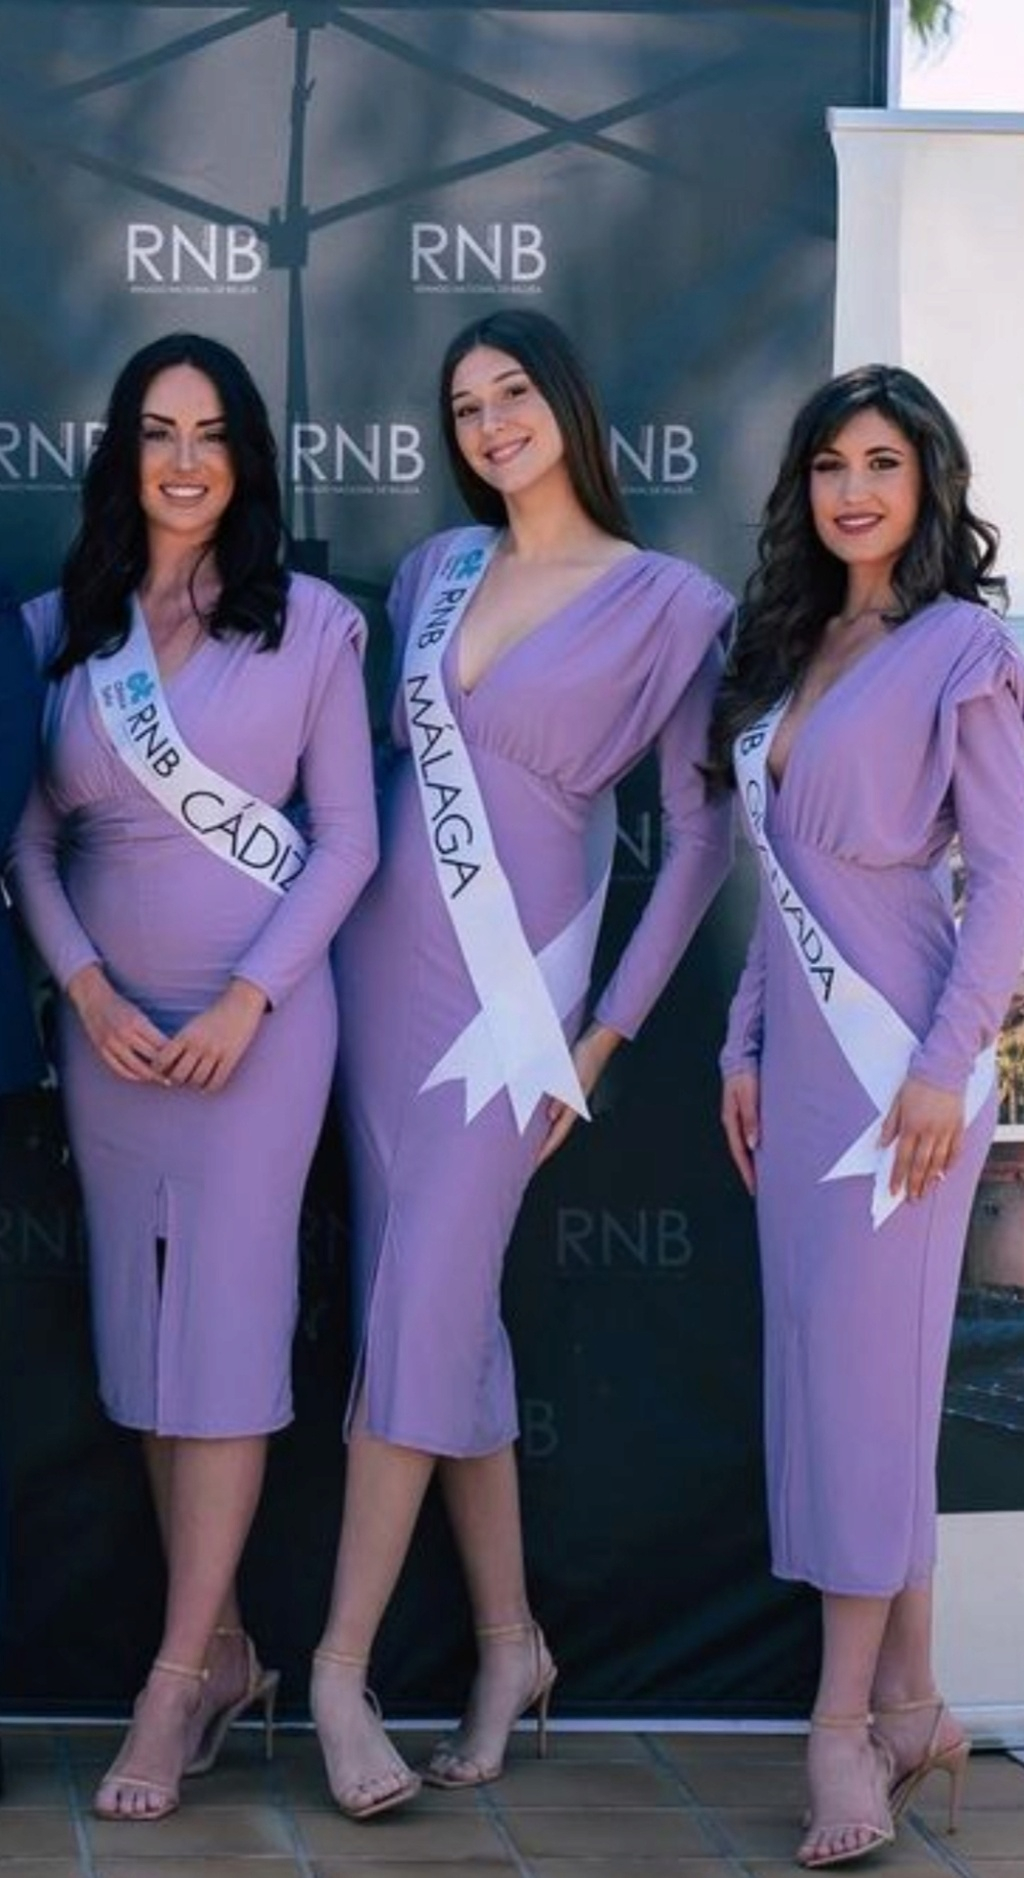 Team Málaga nuevos dueños de la franquicia "Miss Supranational" - Página 6 20230421